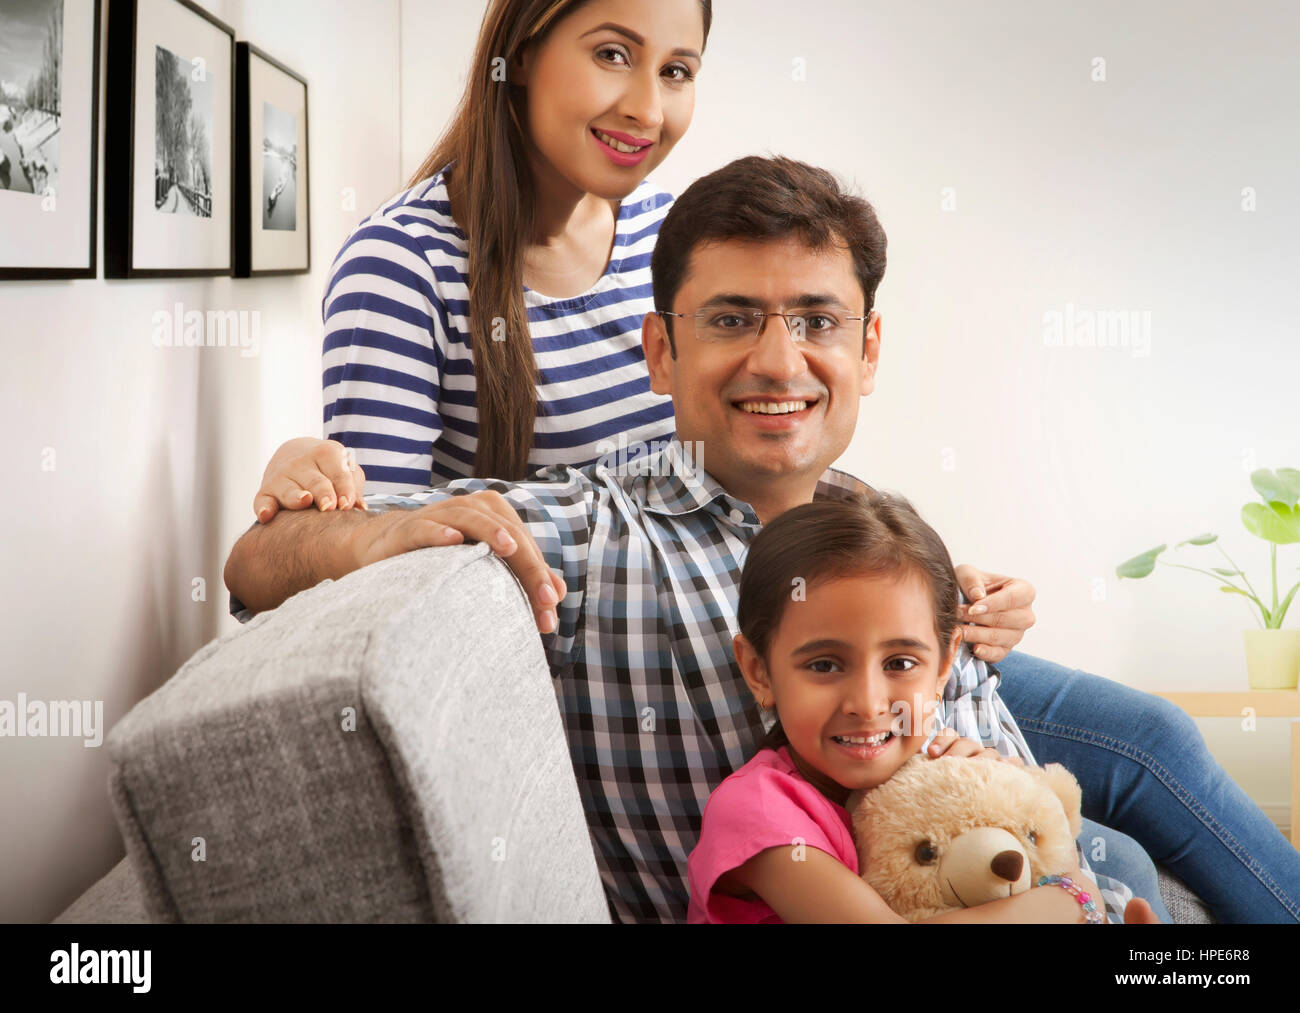 Retrato de una joven familia feliz sentado en el sofá Foto de stock